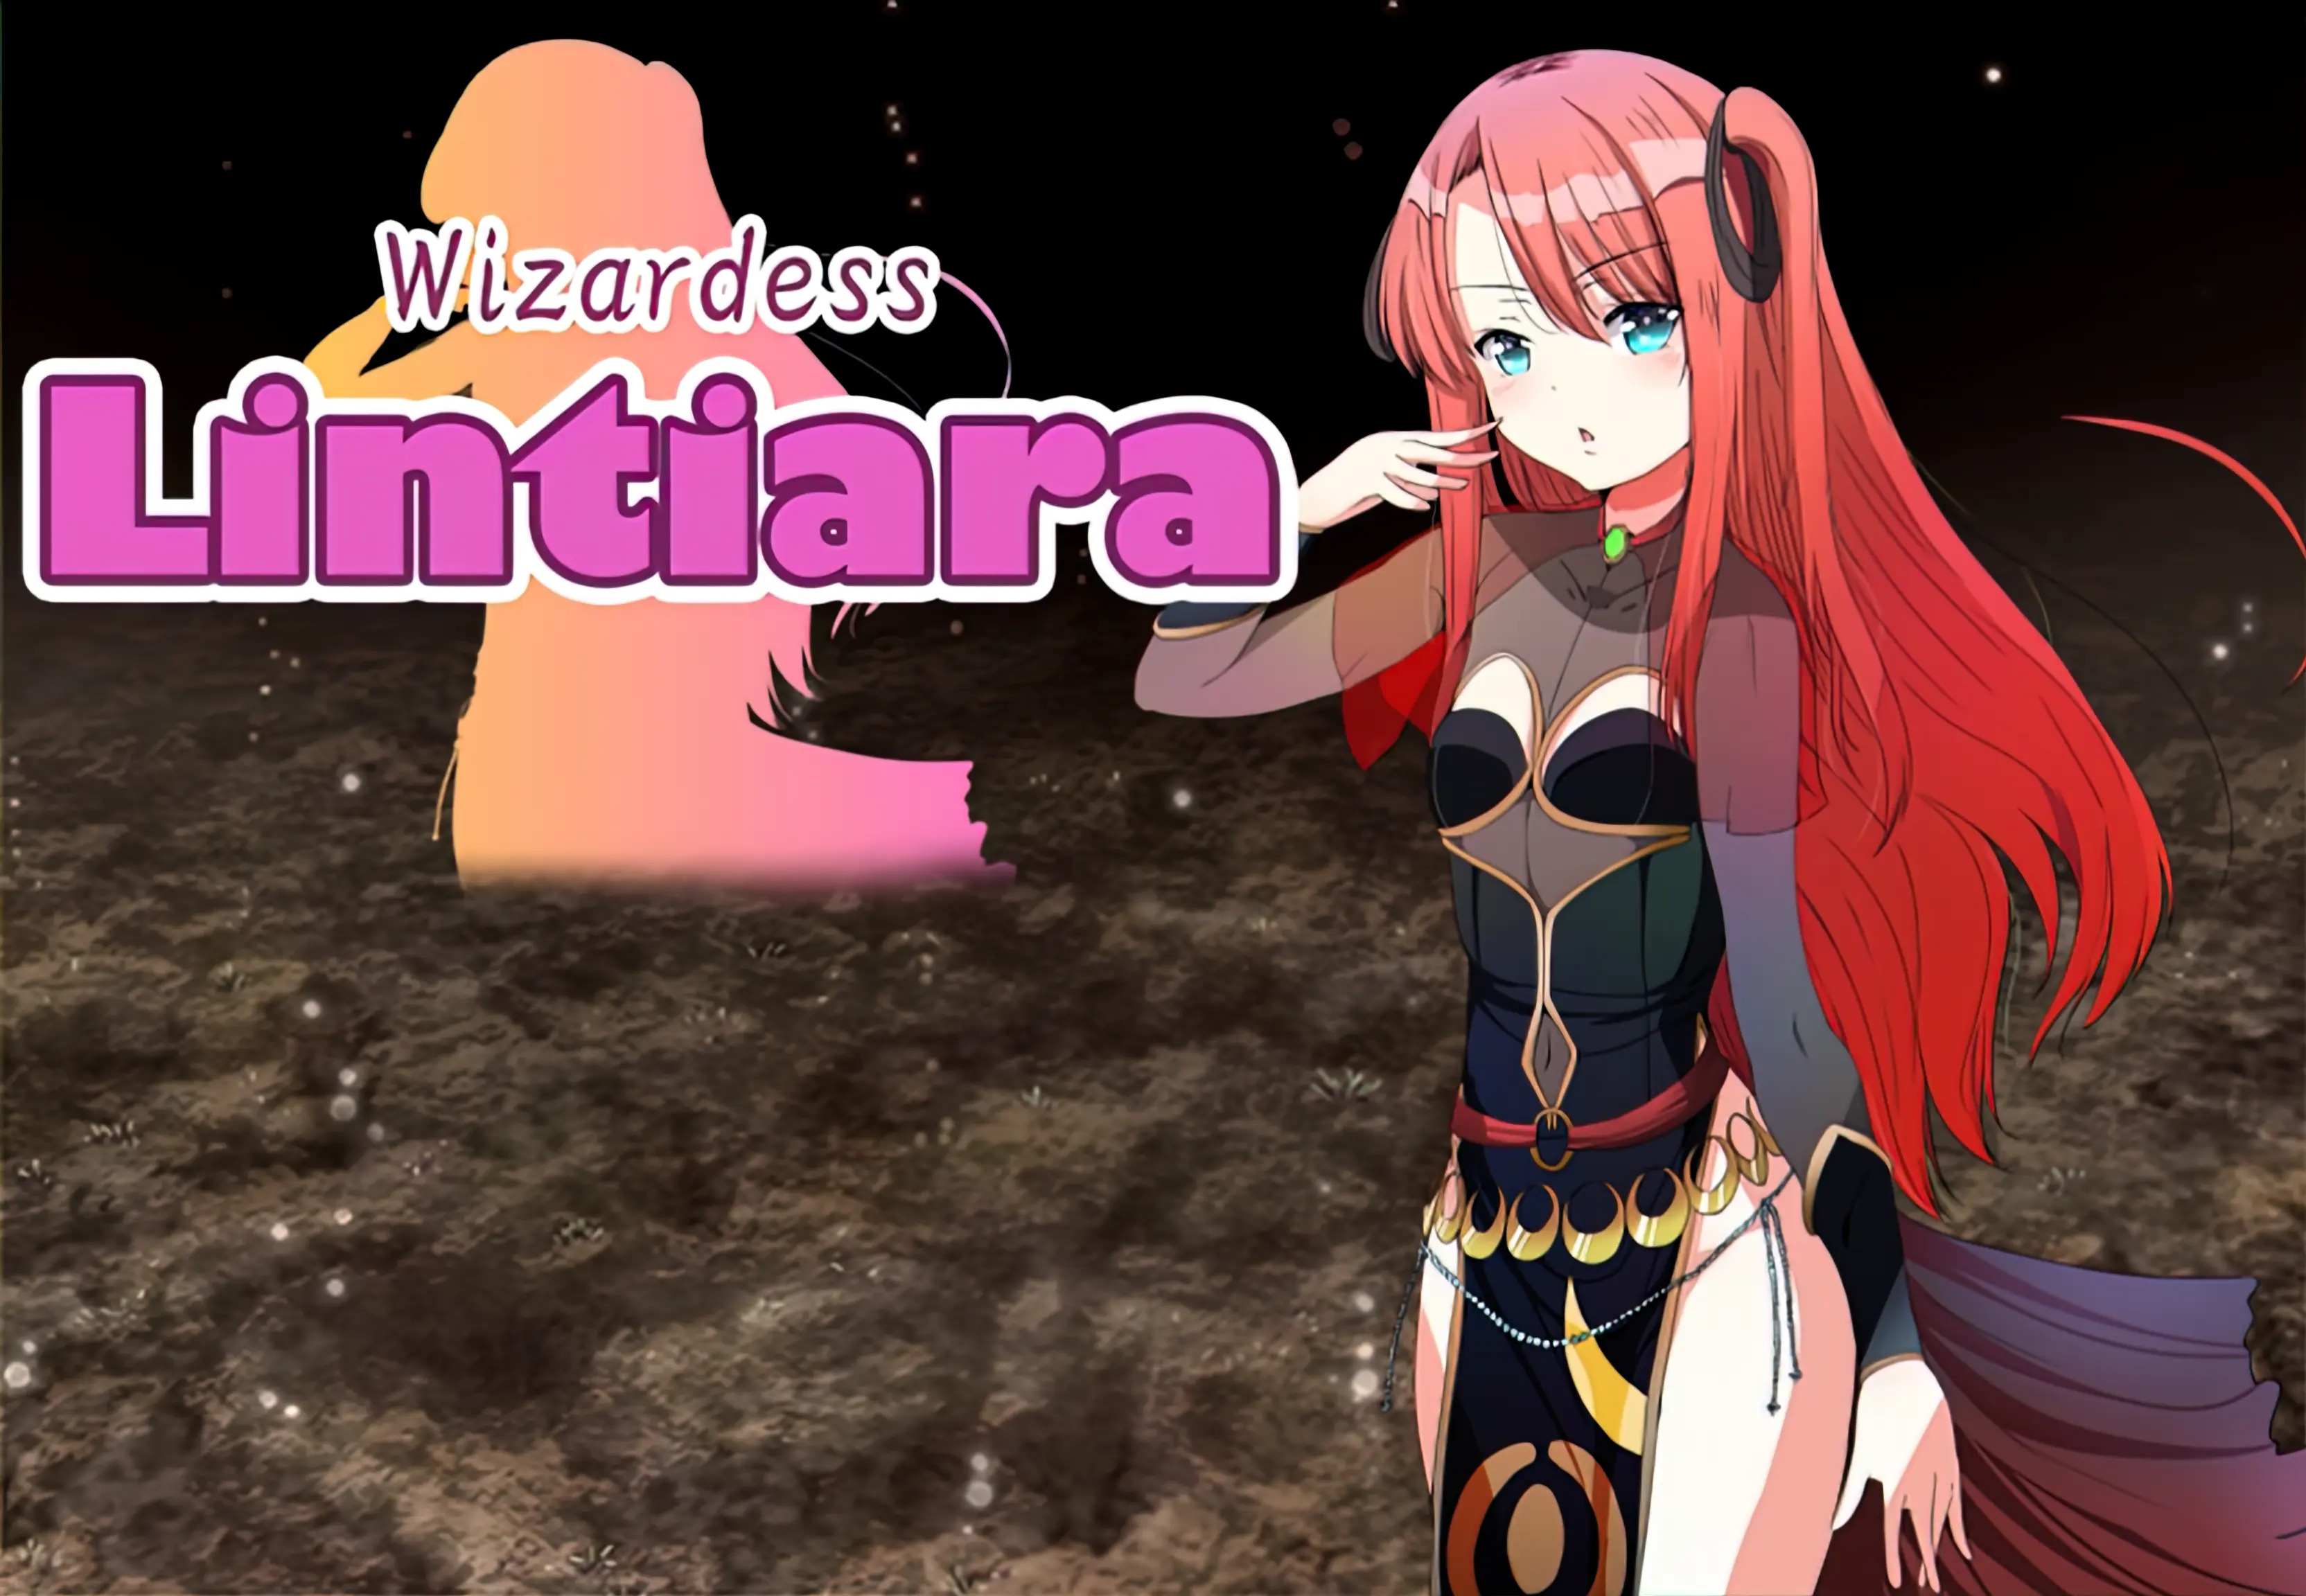 Wizardess Lintiara main image